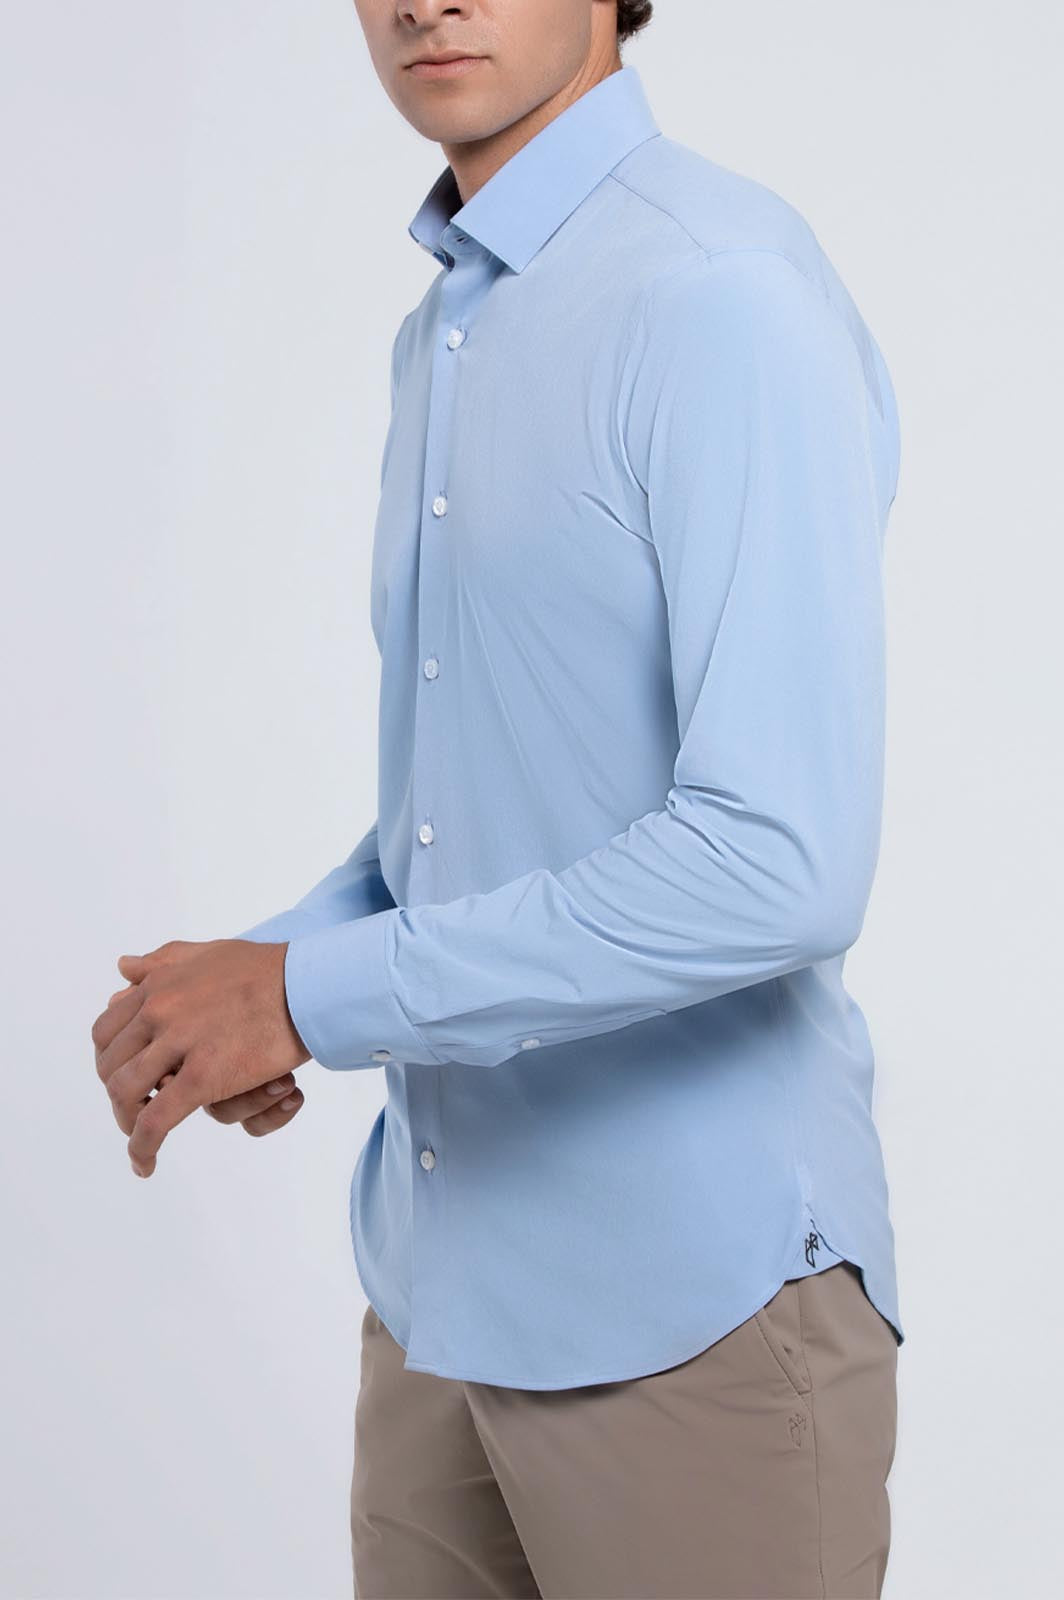 Men's Light Blue Long Sleeve Dress Shirt - State of Matter Apparel